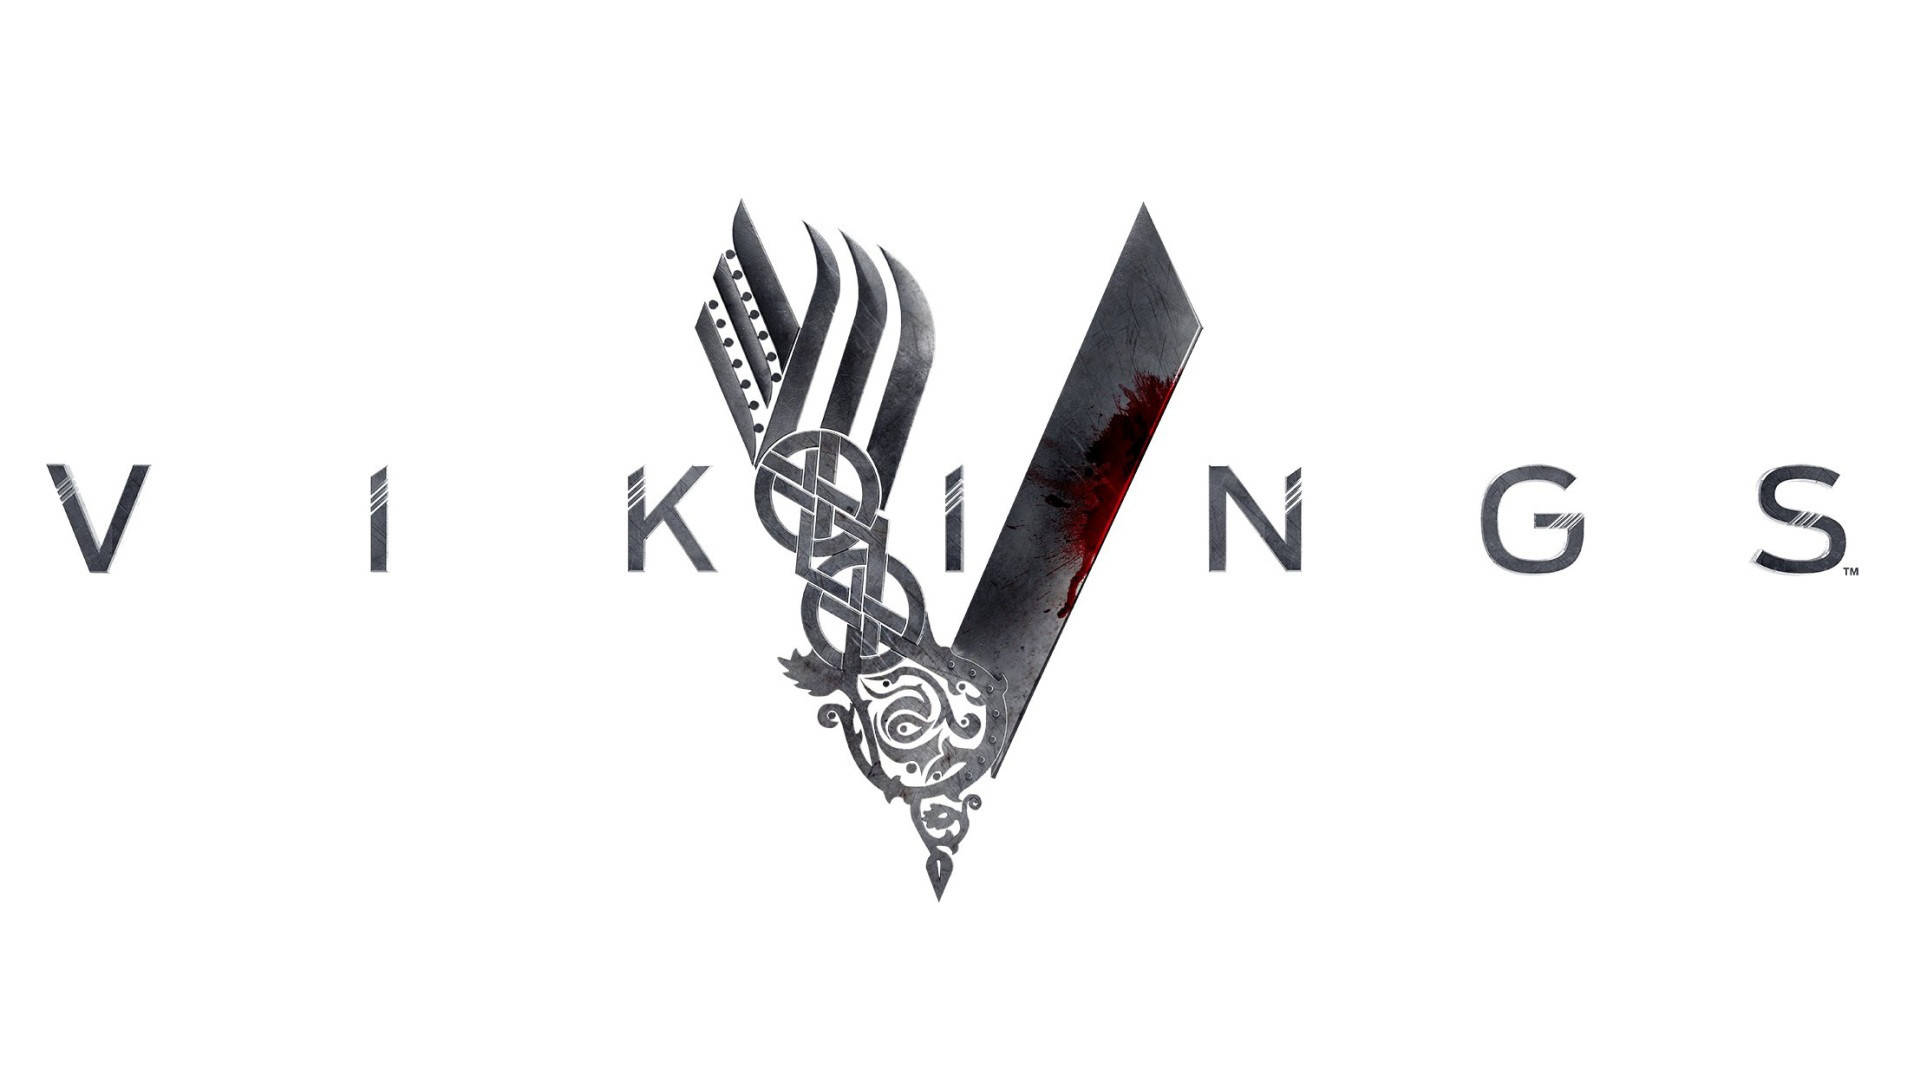 Vikinger Viser Titel Og Logo Wallpaper